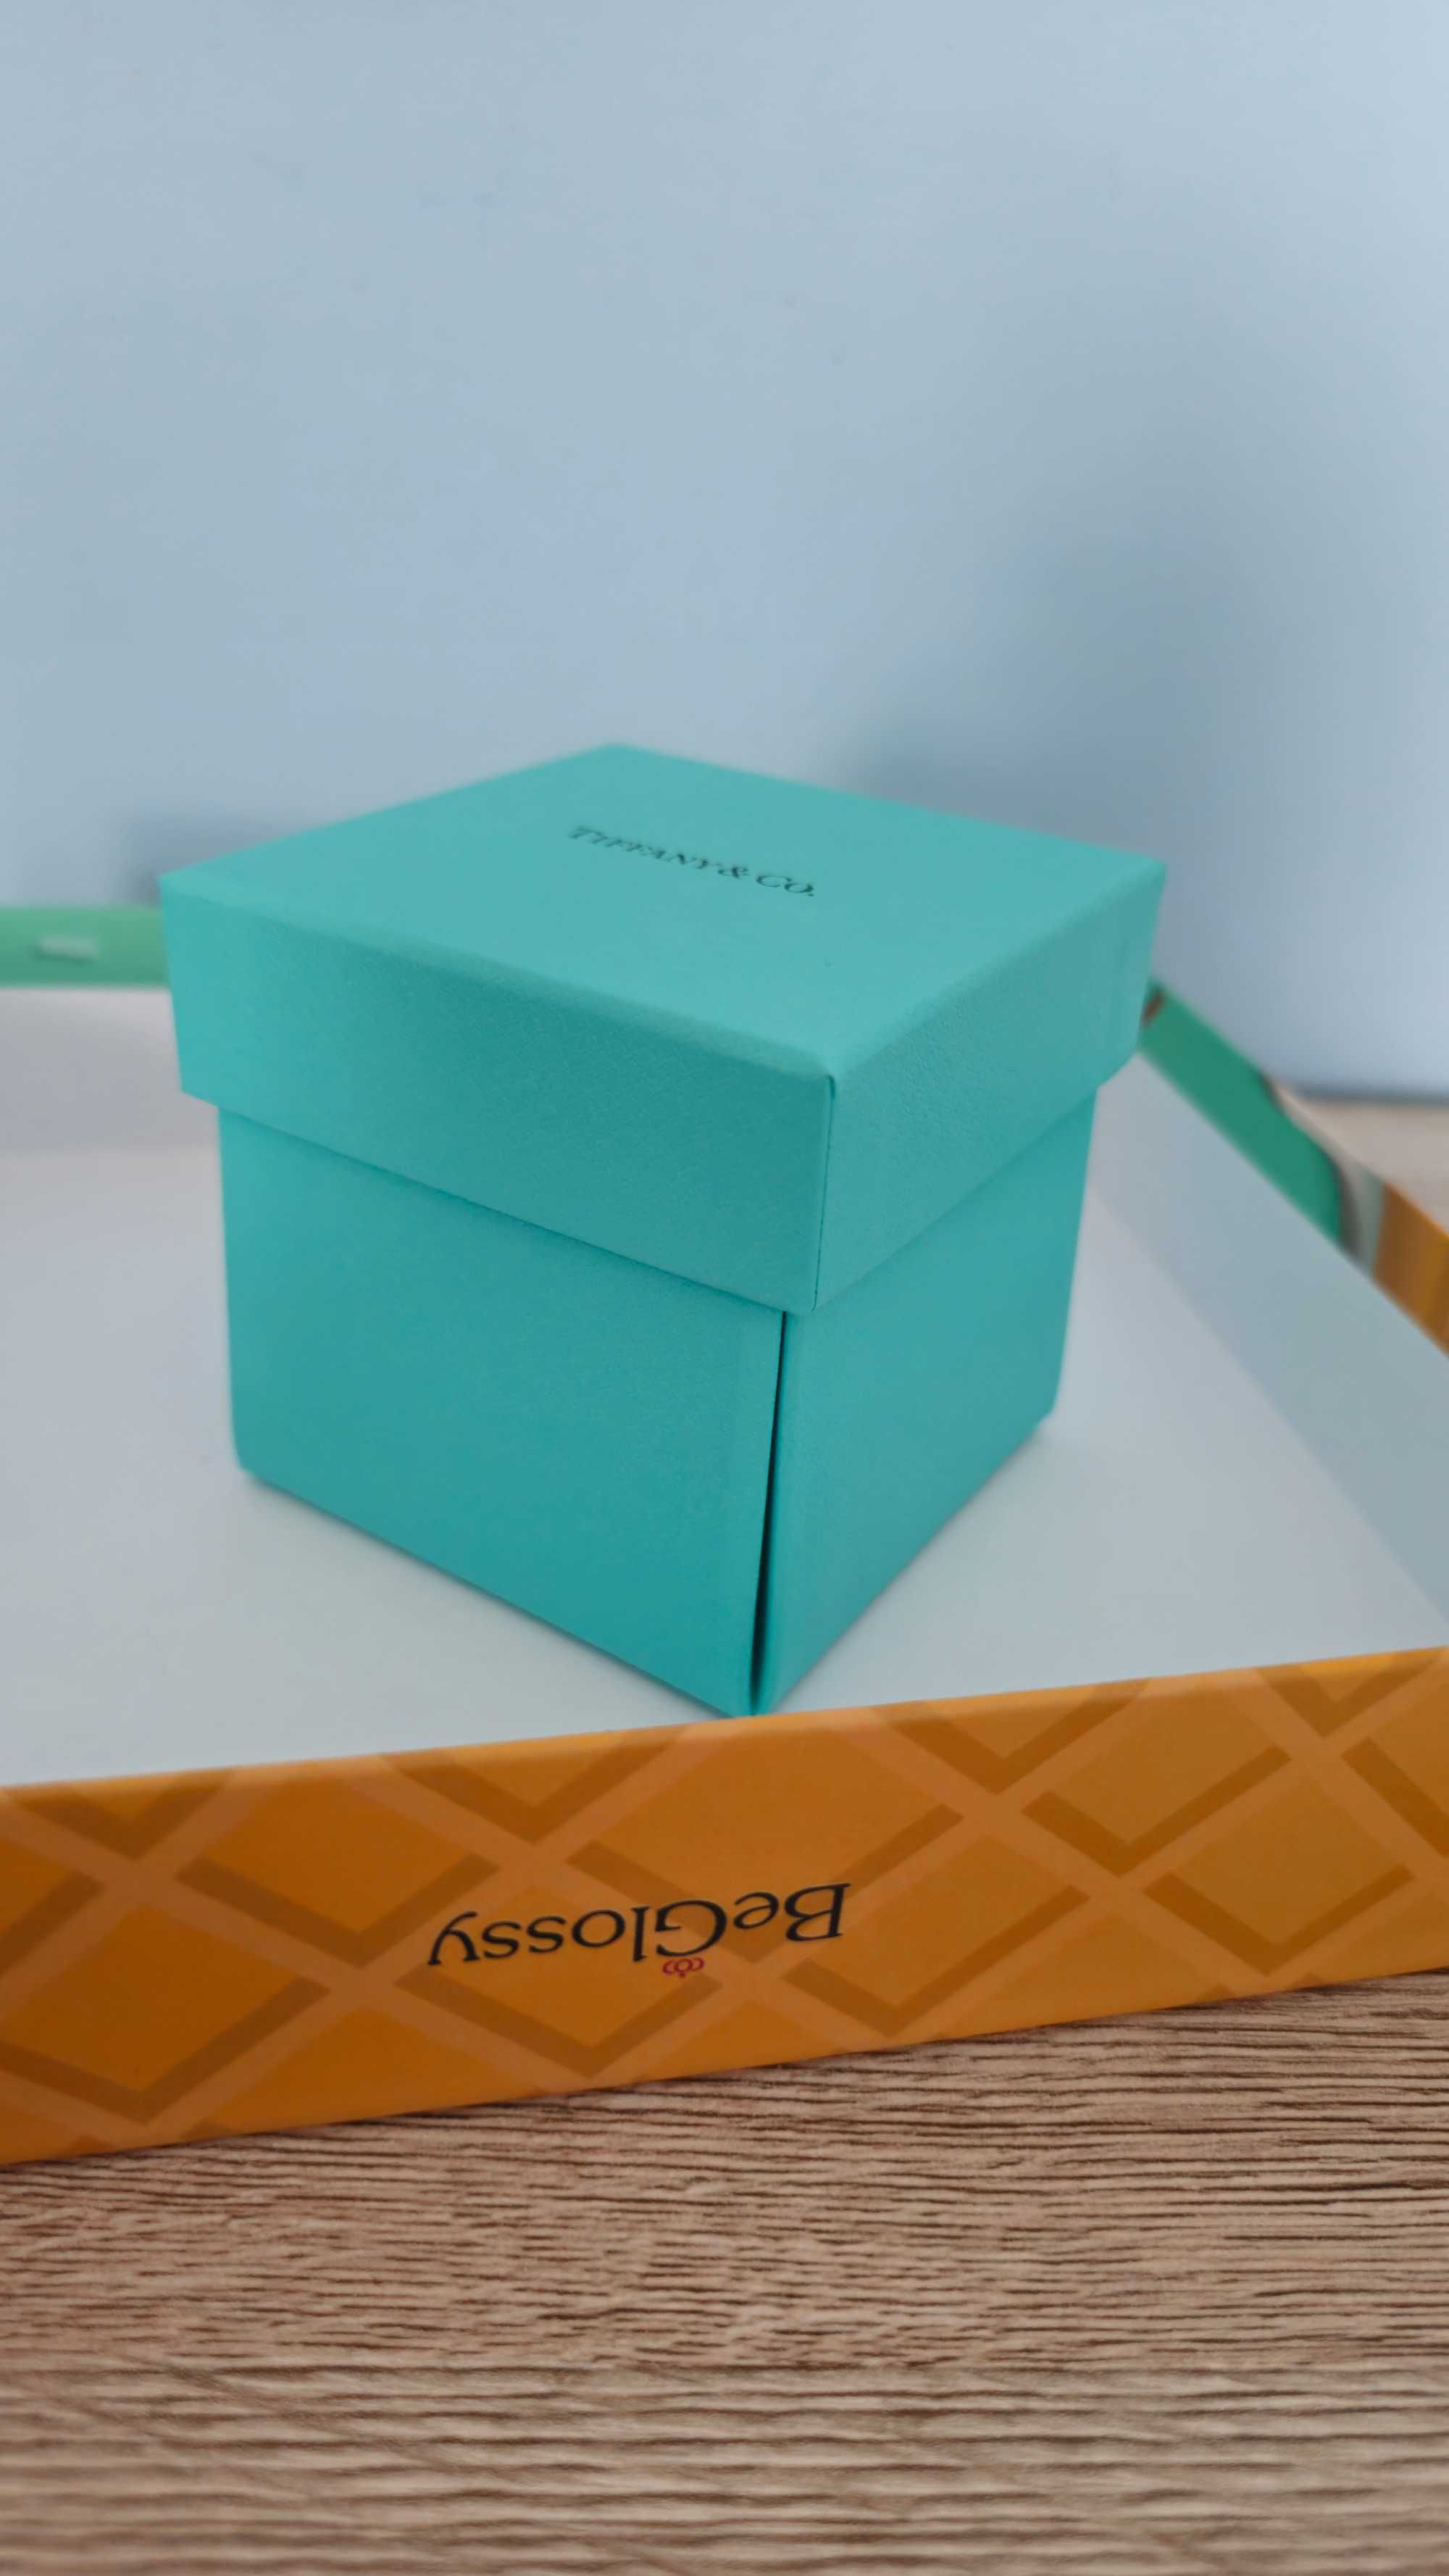 Perfum Tiffany&co 5 ml luxury box